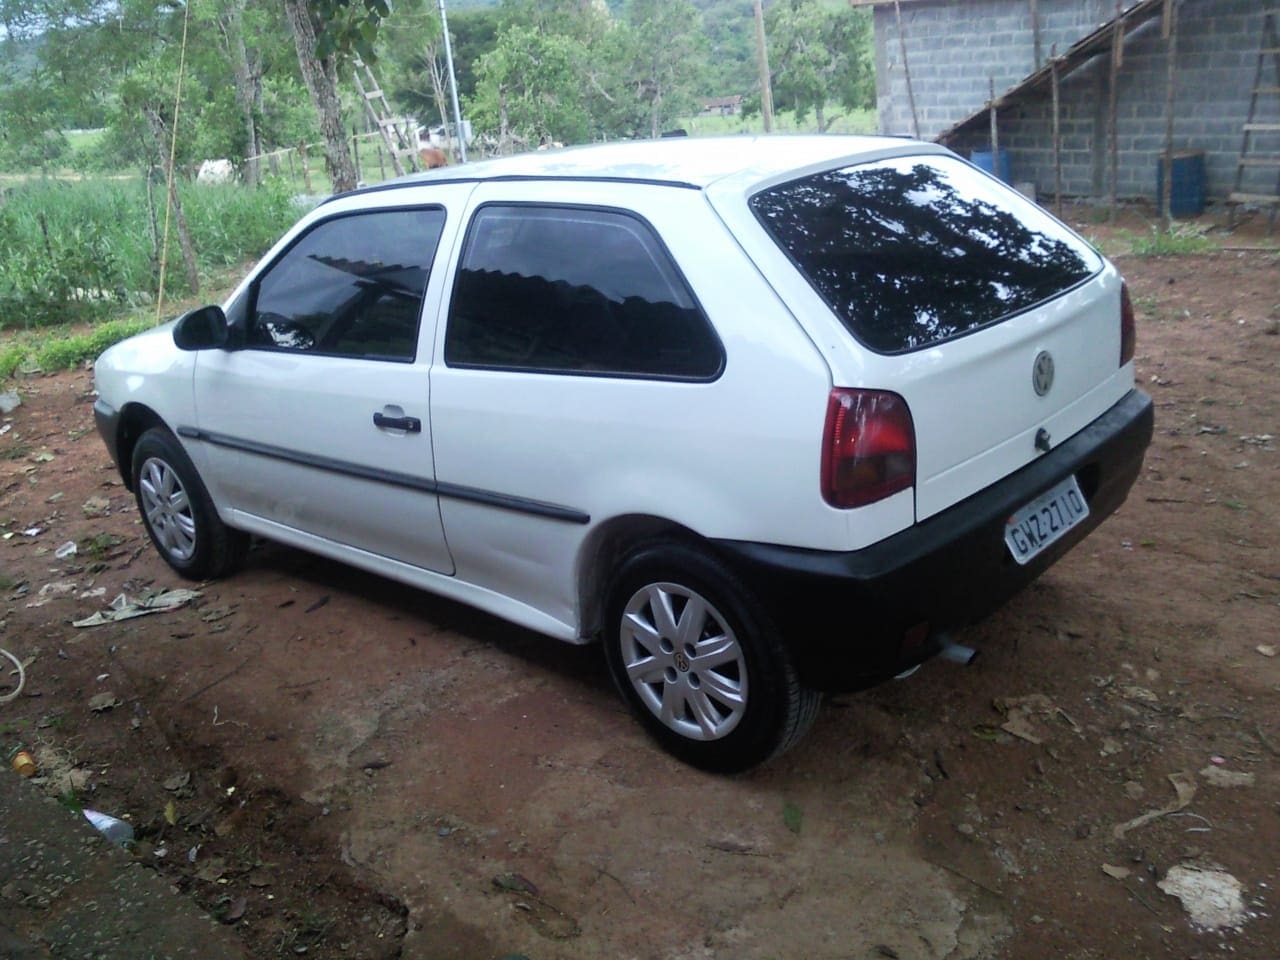 Urgente: ladrões armados roubam carro na entrada de sítio em Divinópolis